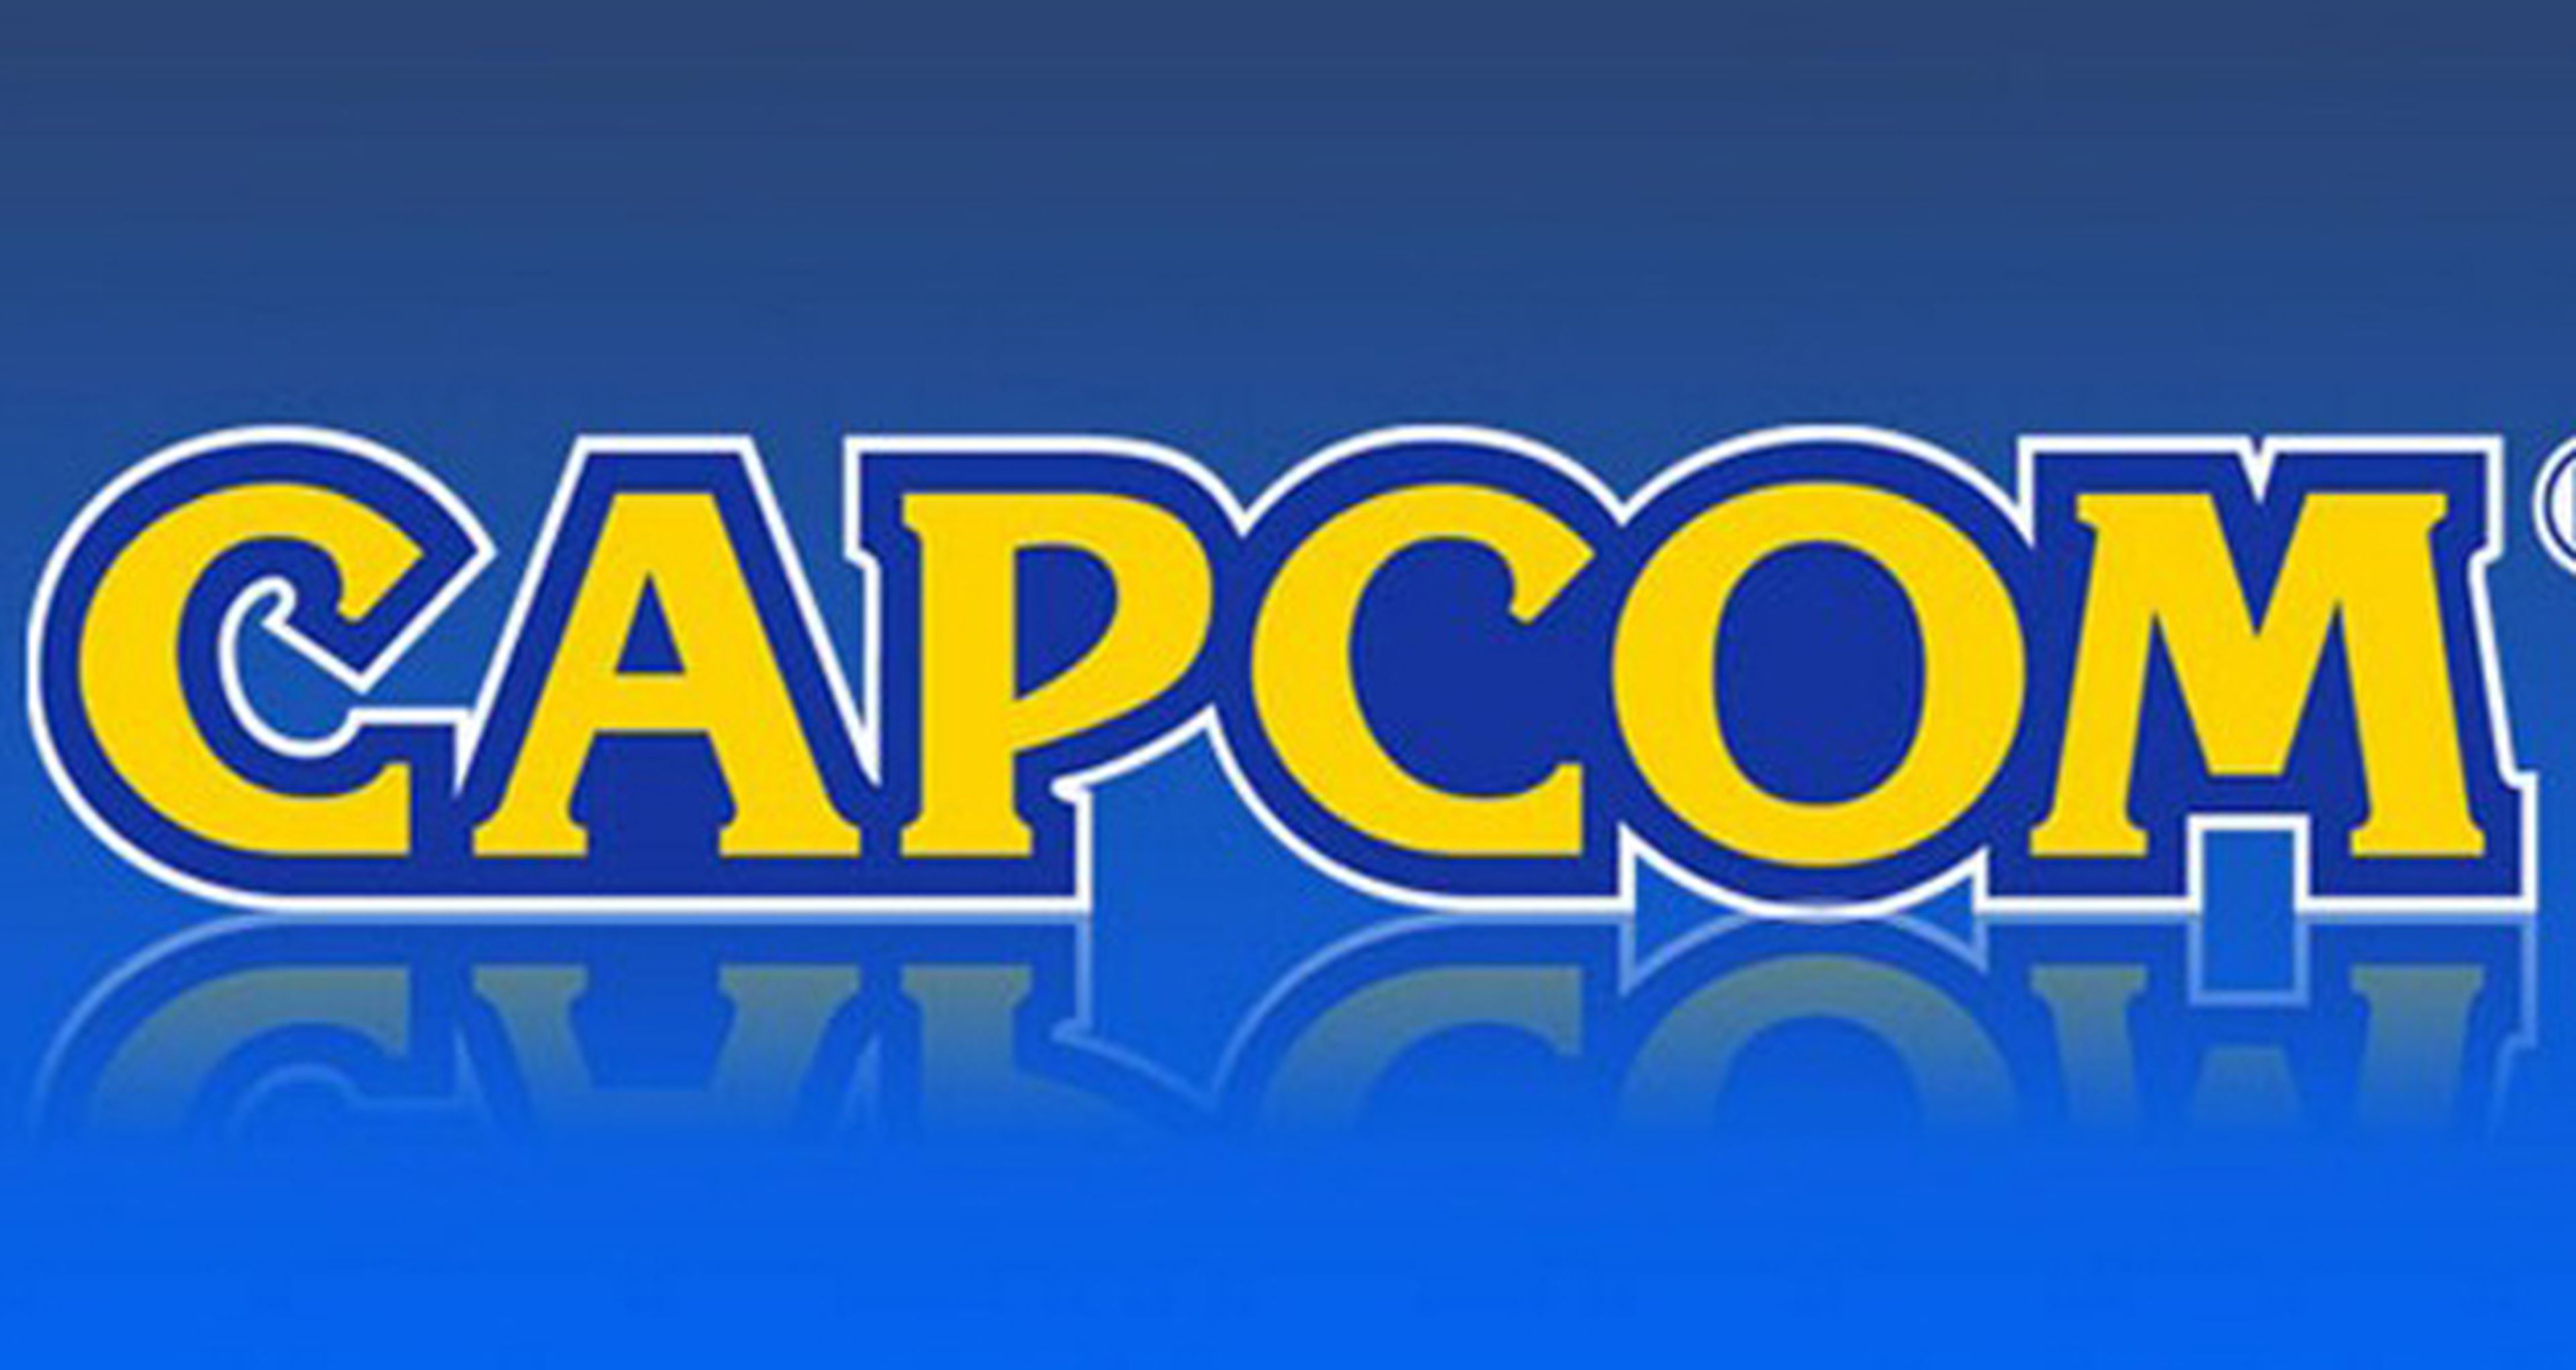 Capcom confirma la llegada de títulos de GBA a Wii U